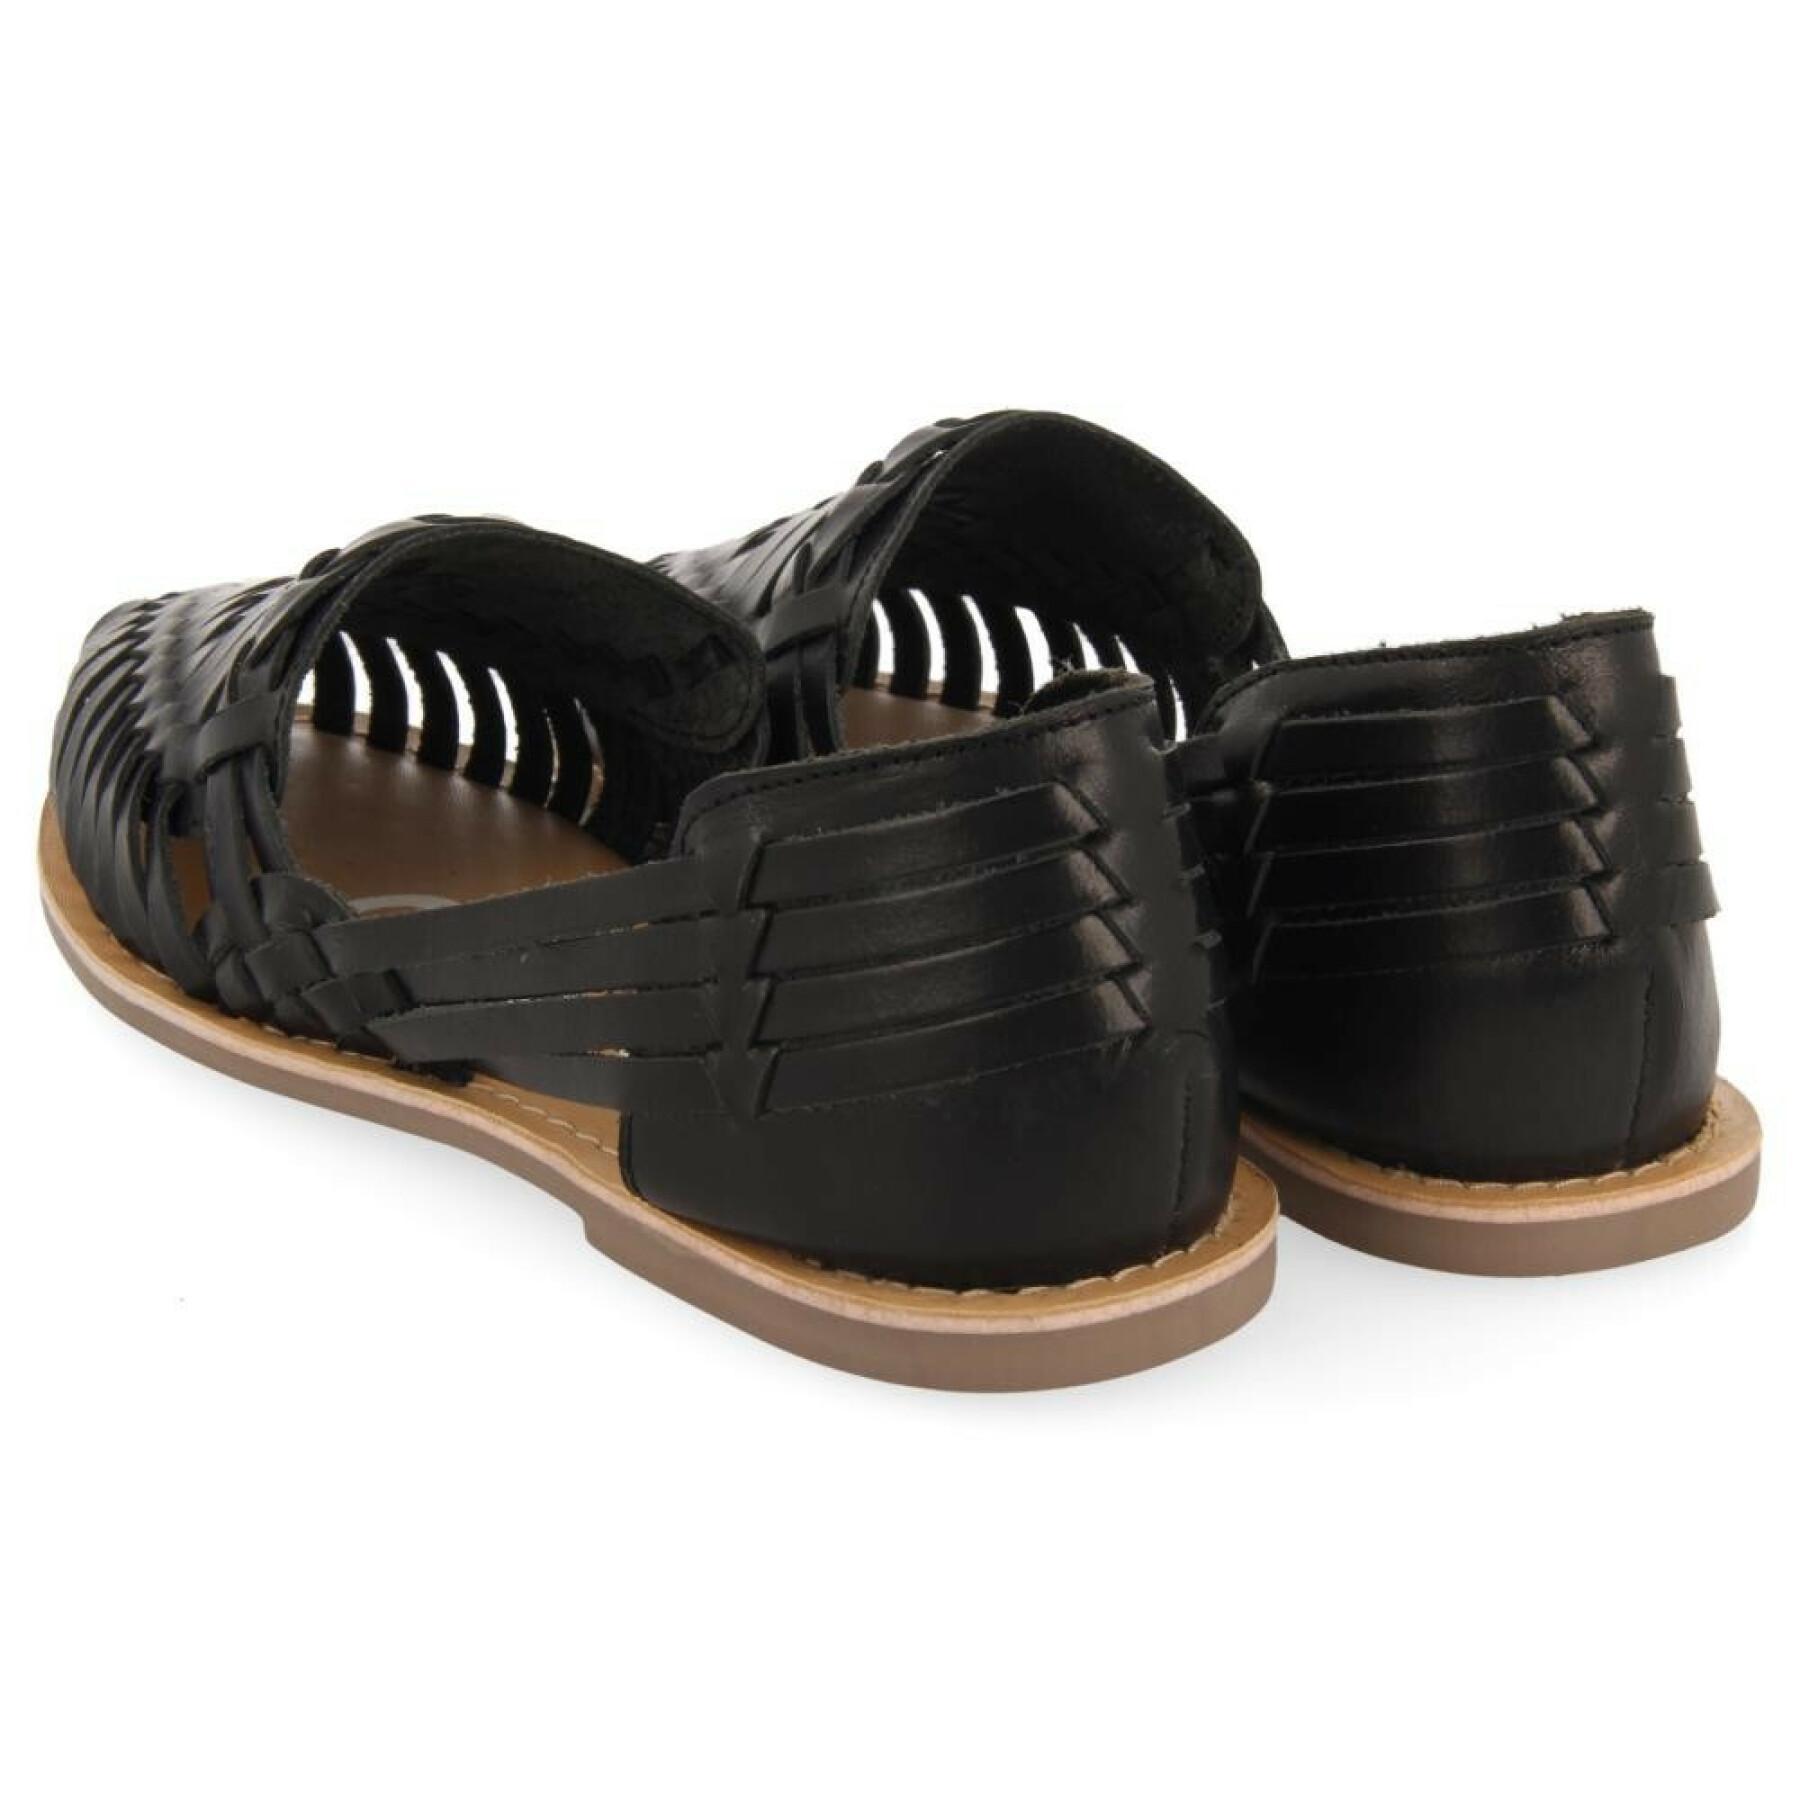 Women's sandals Gioseppo Bonorva